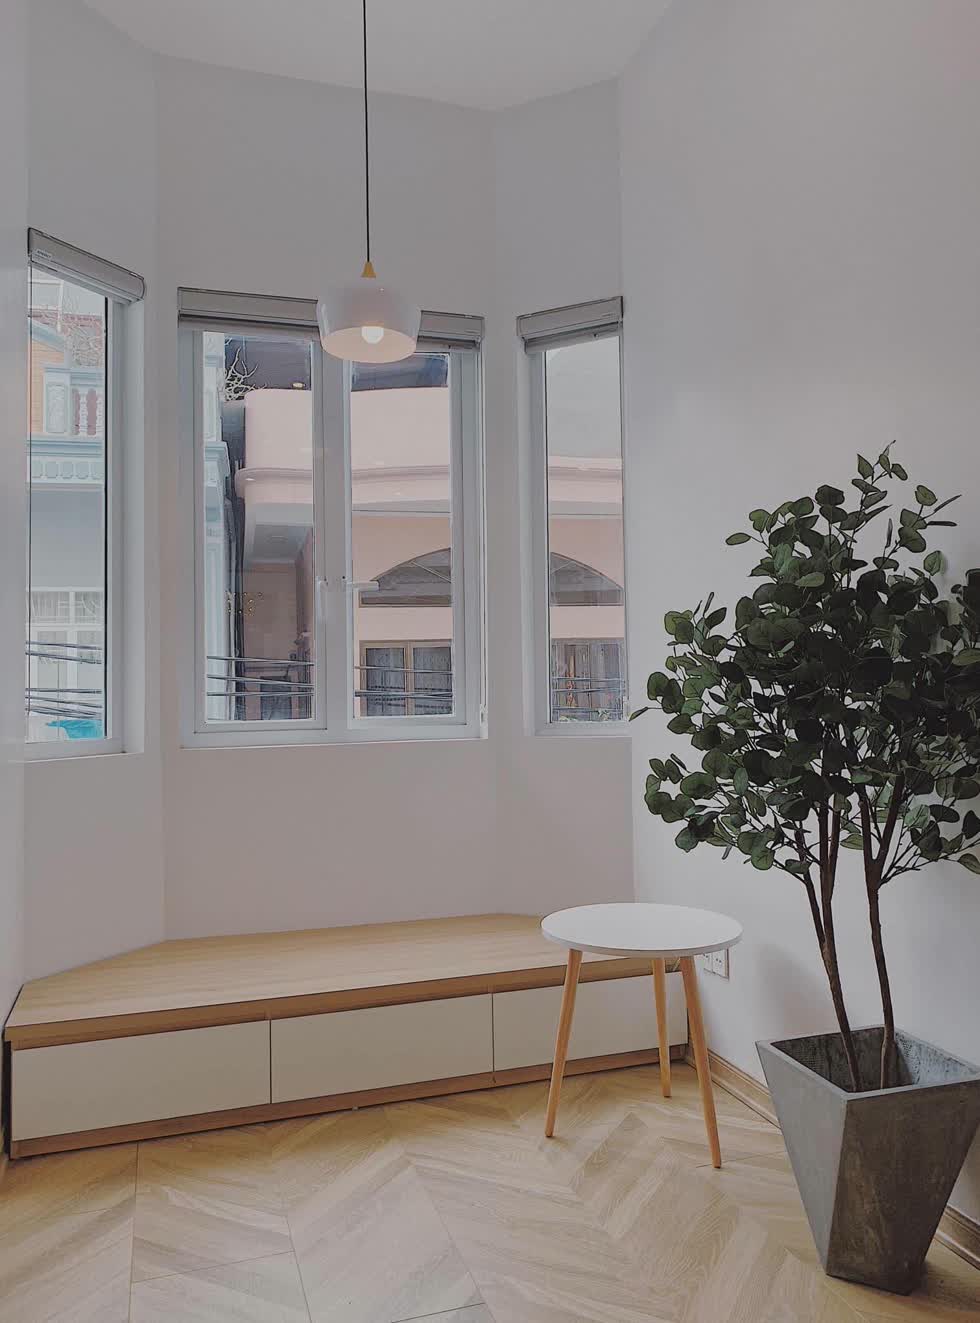 Cửa sổ được lắp đặt dọc theo cầu thang giúp ánh sáng và không khí có thể dễ dàng trao đổi giữa trong và ngoài ngôi nhà.